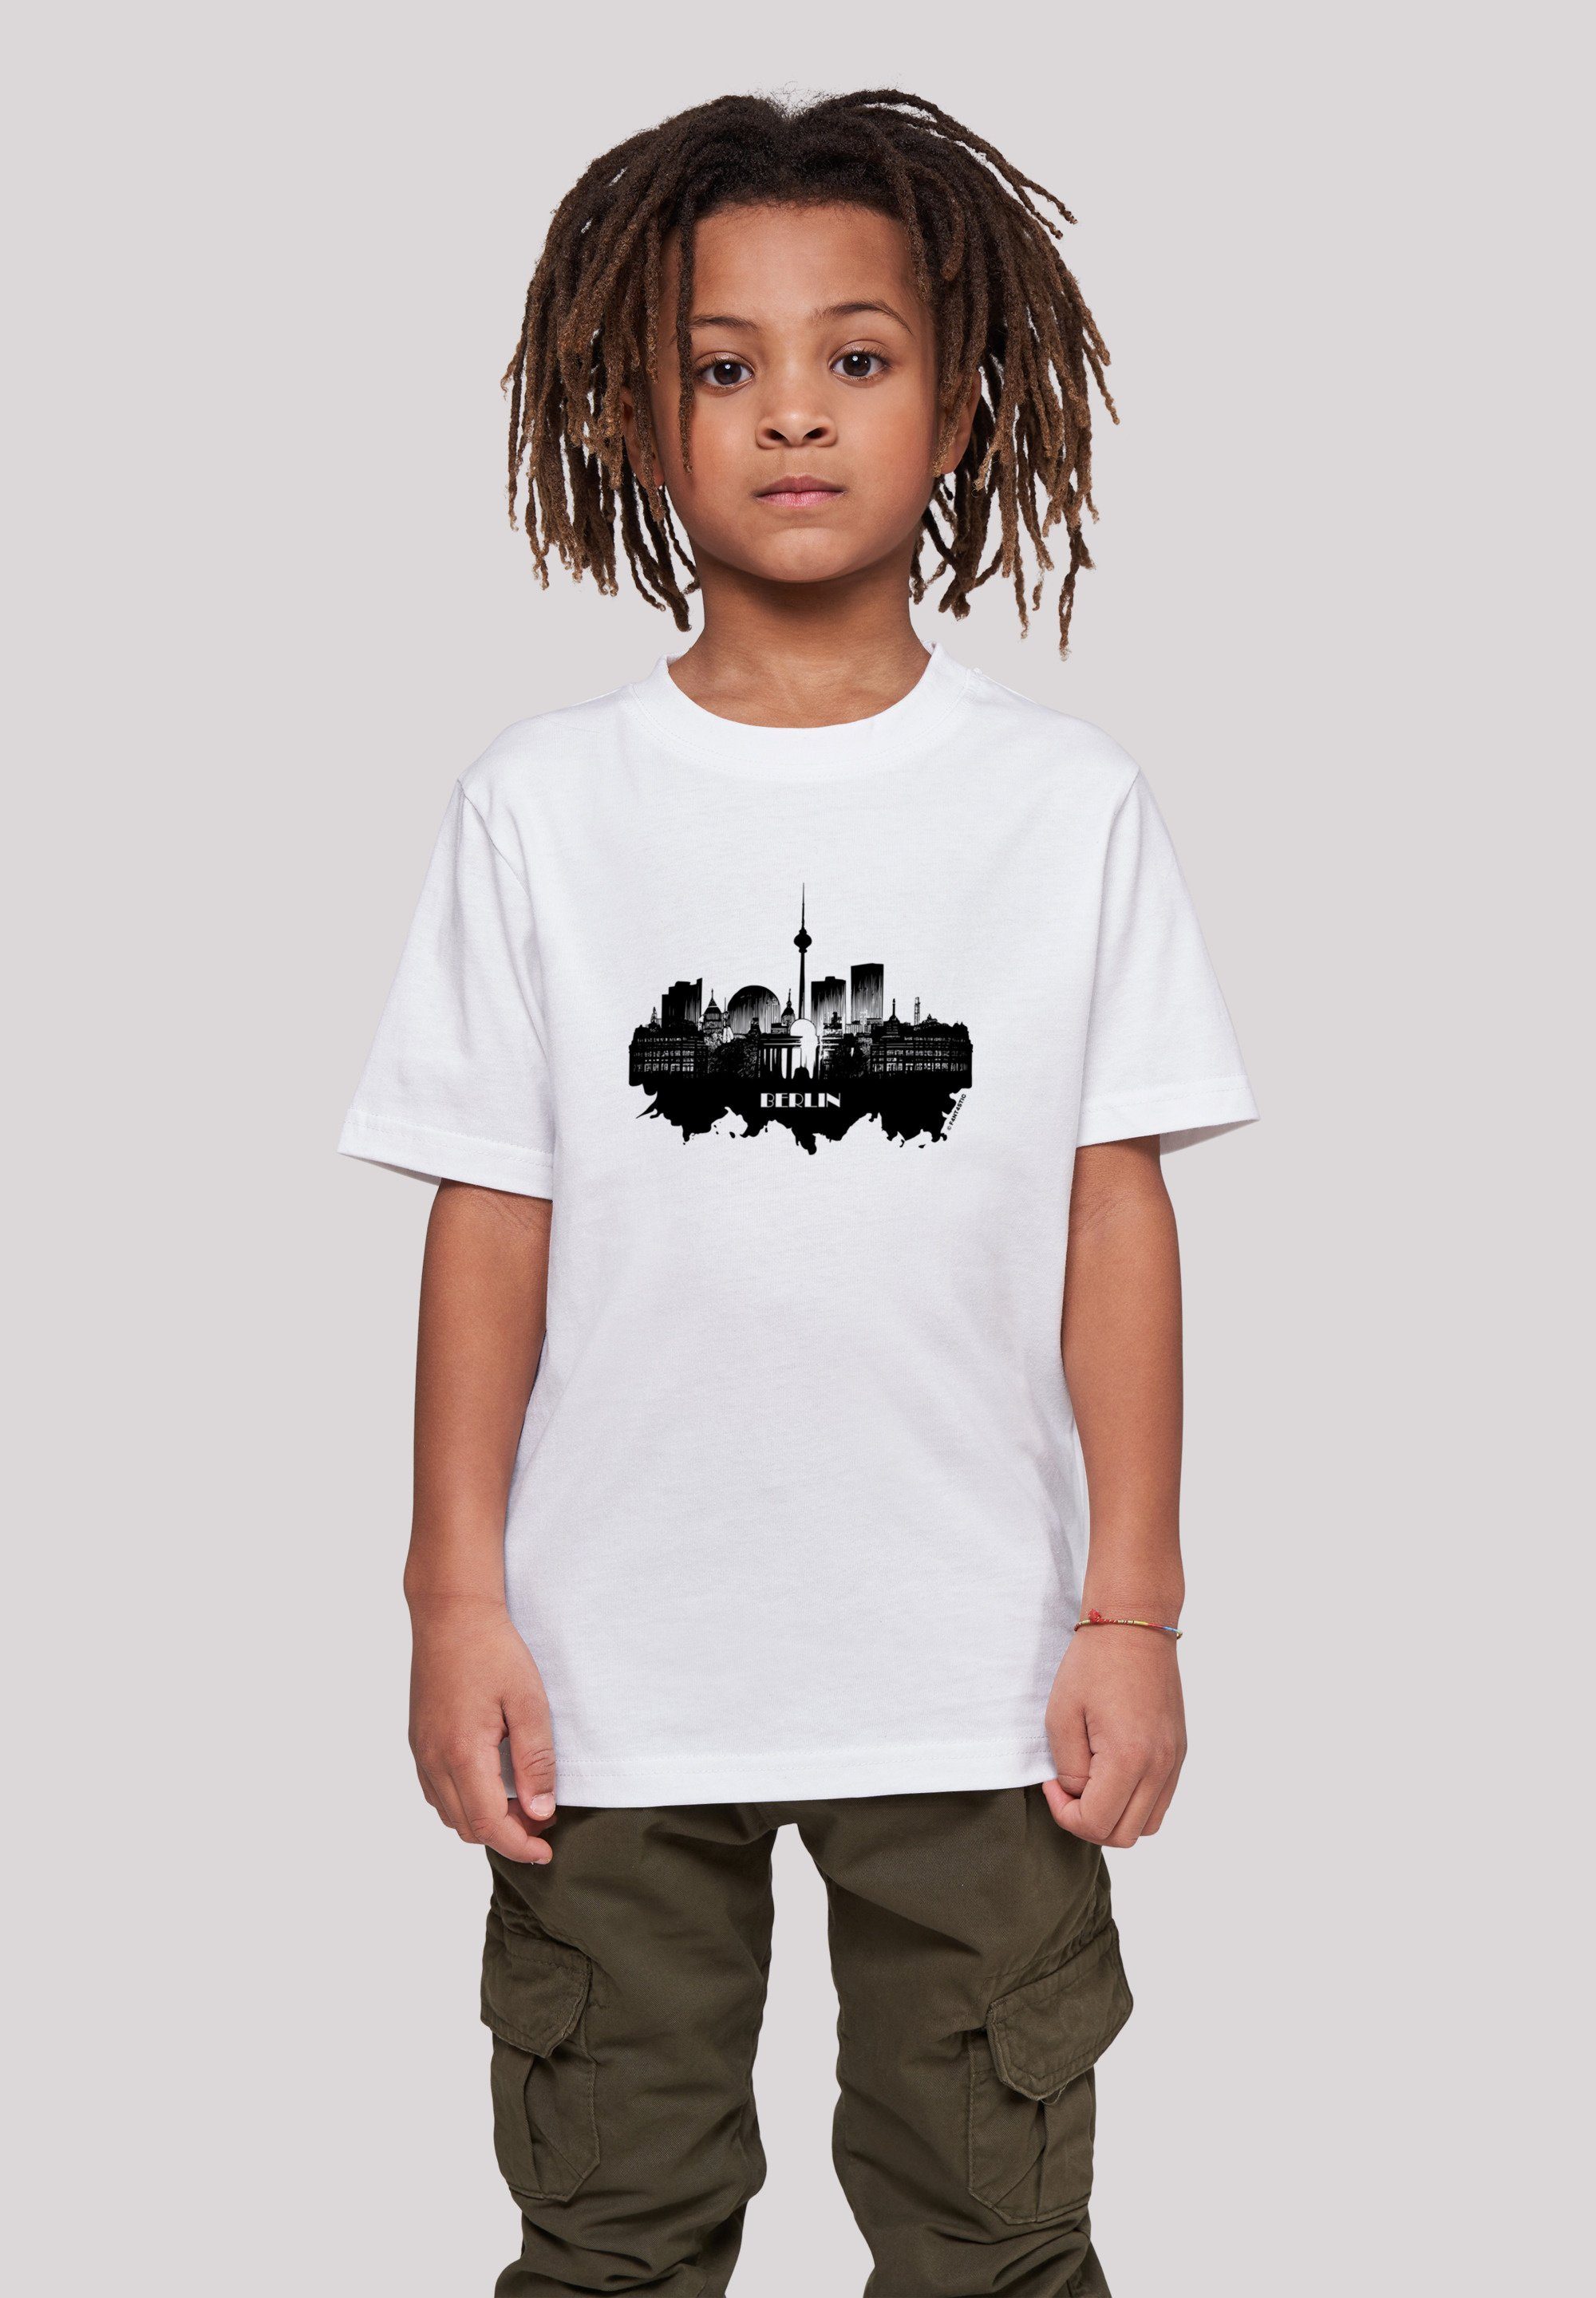 Tragekomfort Print, hohem Collection T-Shirt Berlin skyline Baumwollstoff Sehr weicher F4NT4STIC Cities - mit